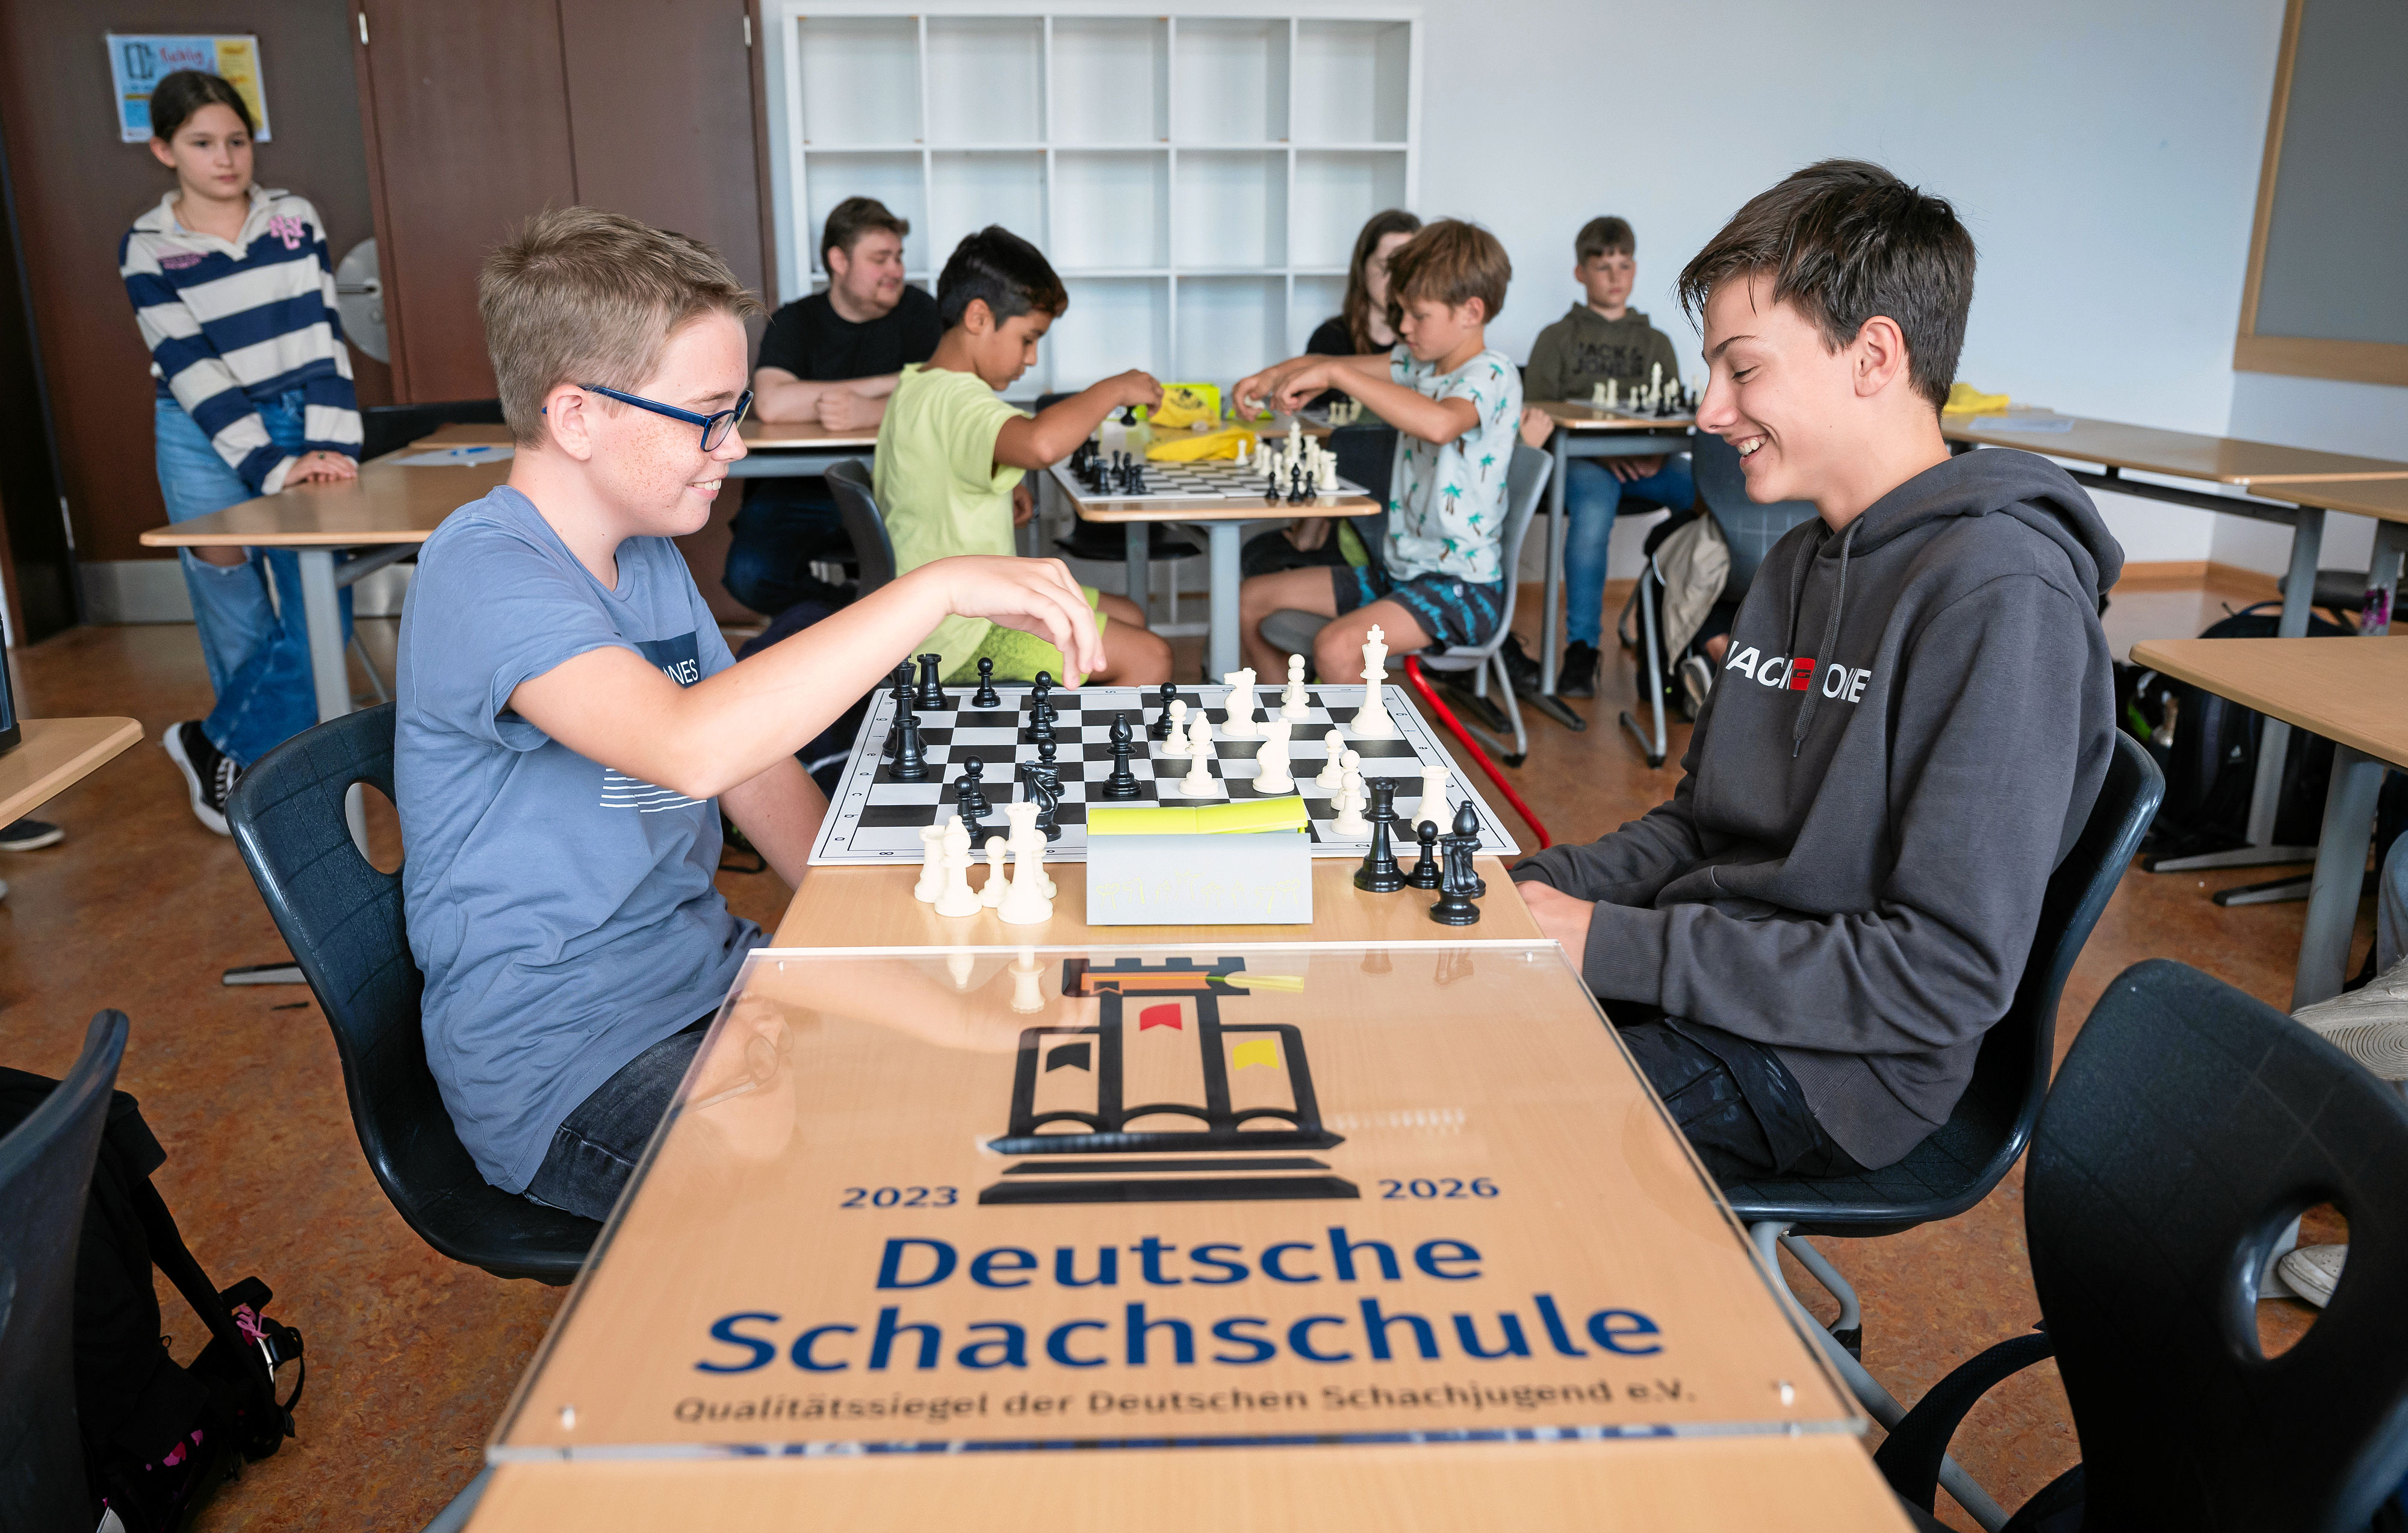 Das Lüneburger Gymnasium Herderschule ist als Schachschule ausgezeichnet worden